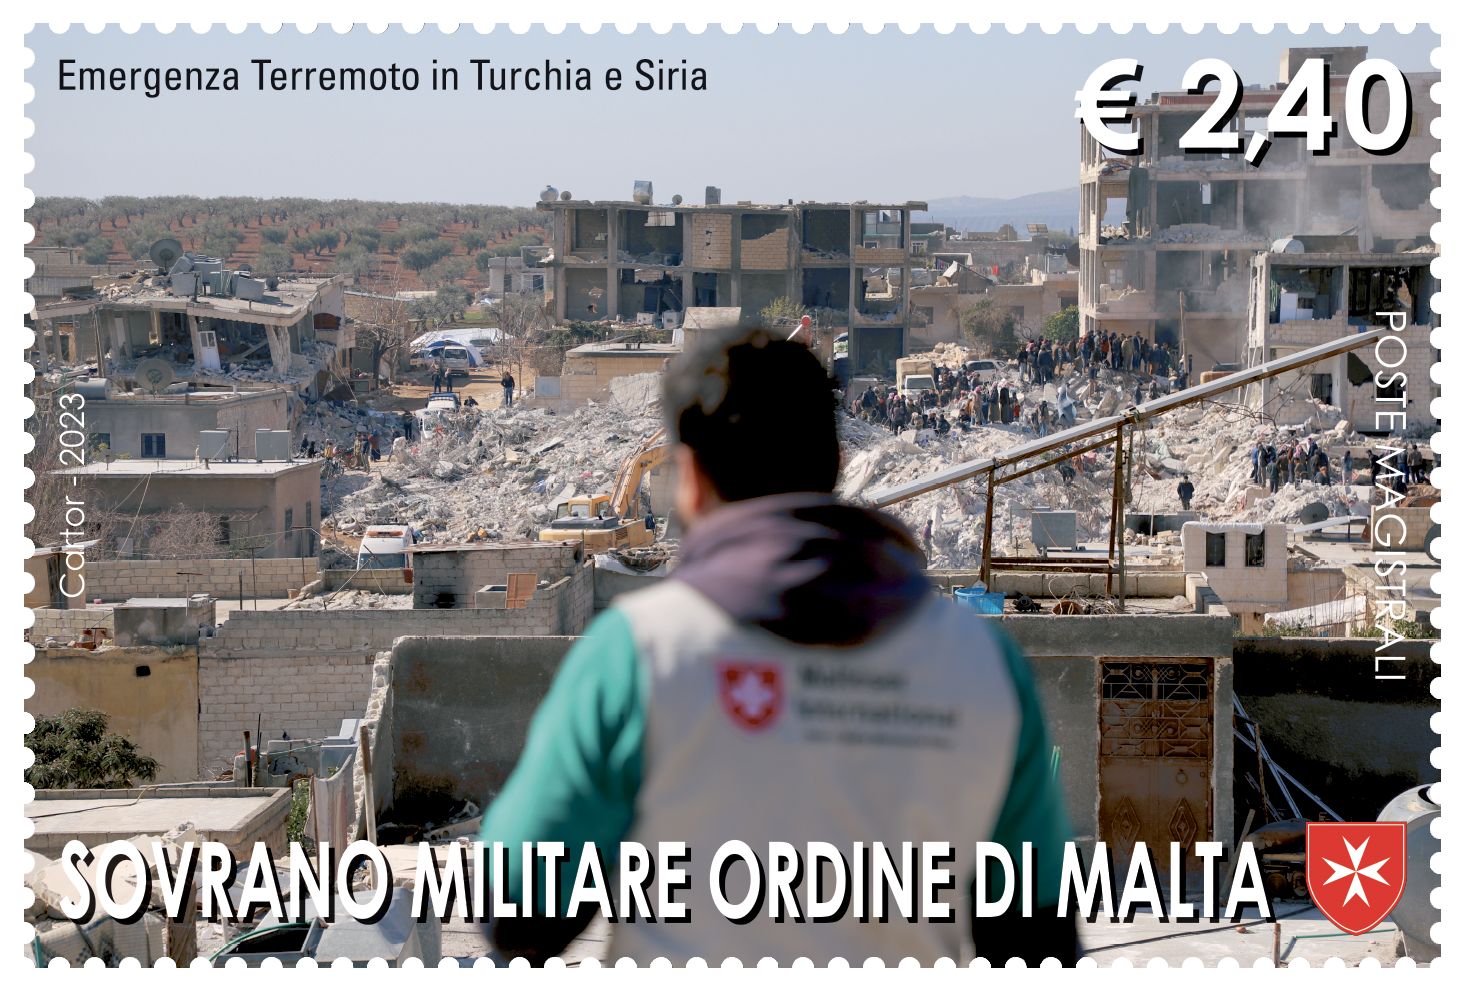 Le attività ospedaliere dell’Ordine di Malta. L’assistenza alle vittime del terremoto in Turchia e Siria